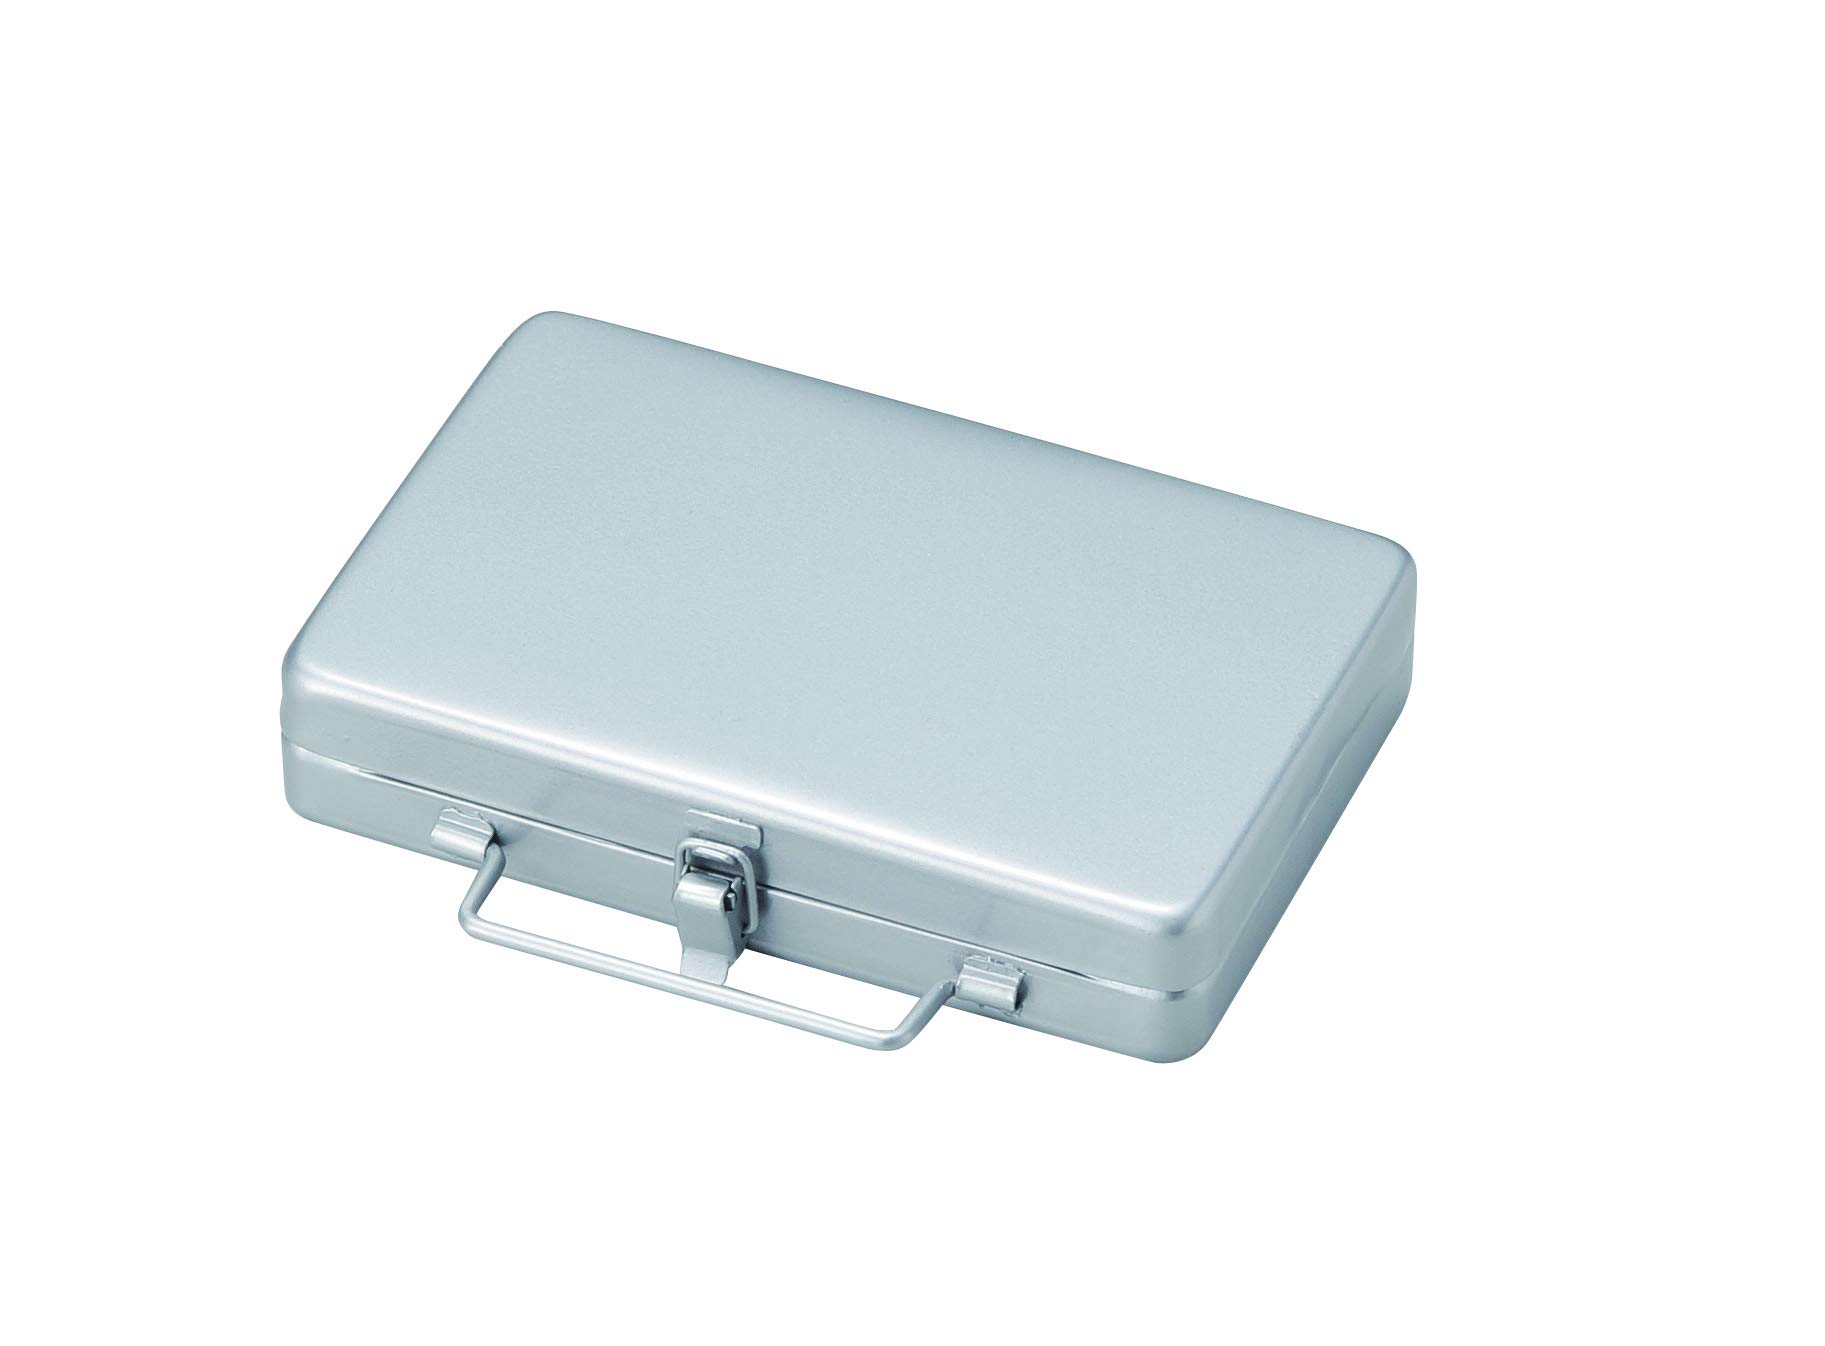 セトクラフト(Seto Craft) Setocraft Card Case (Briefcase)